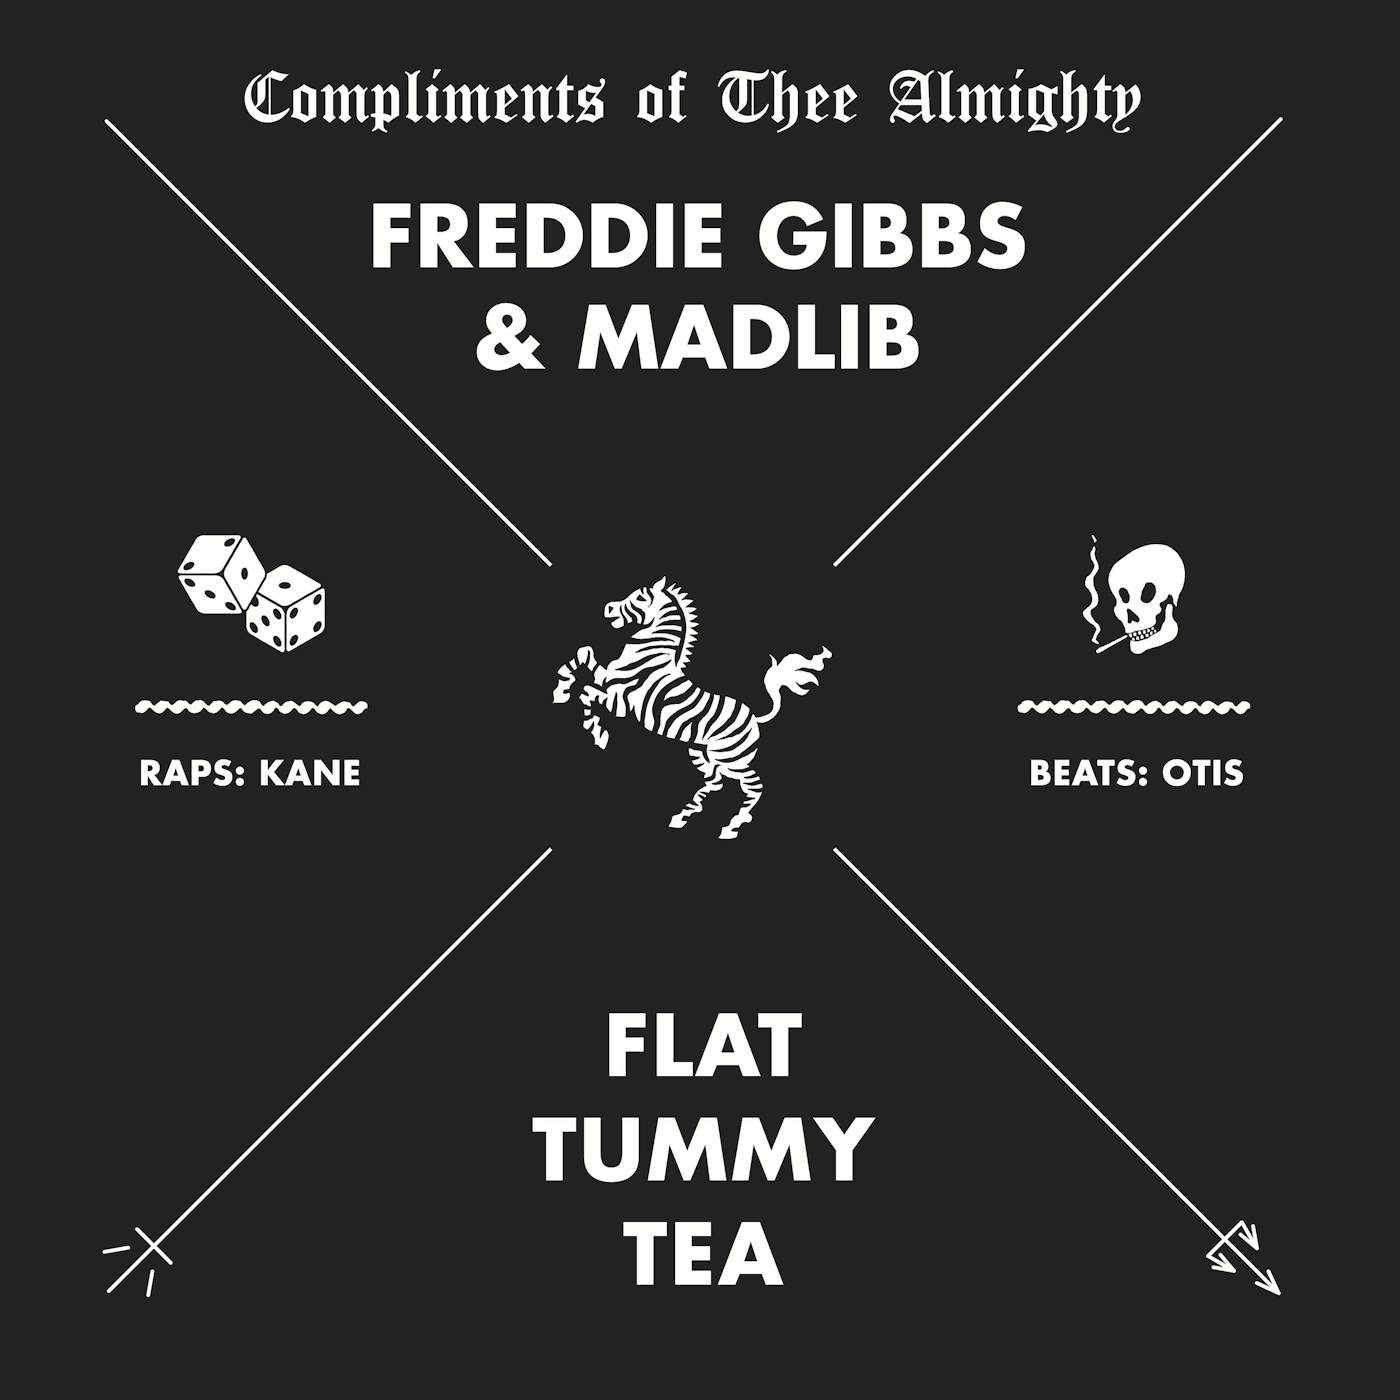 Freddie Gibbs Flat Tummy Tea Vinyl Record